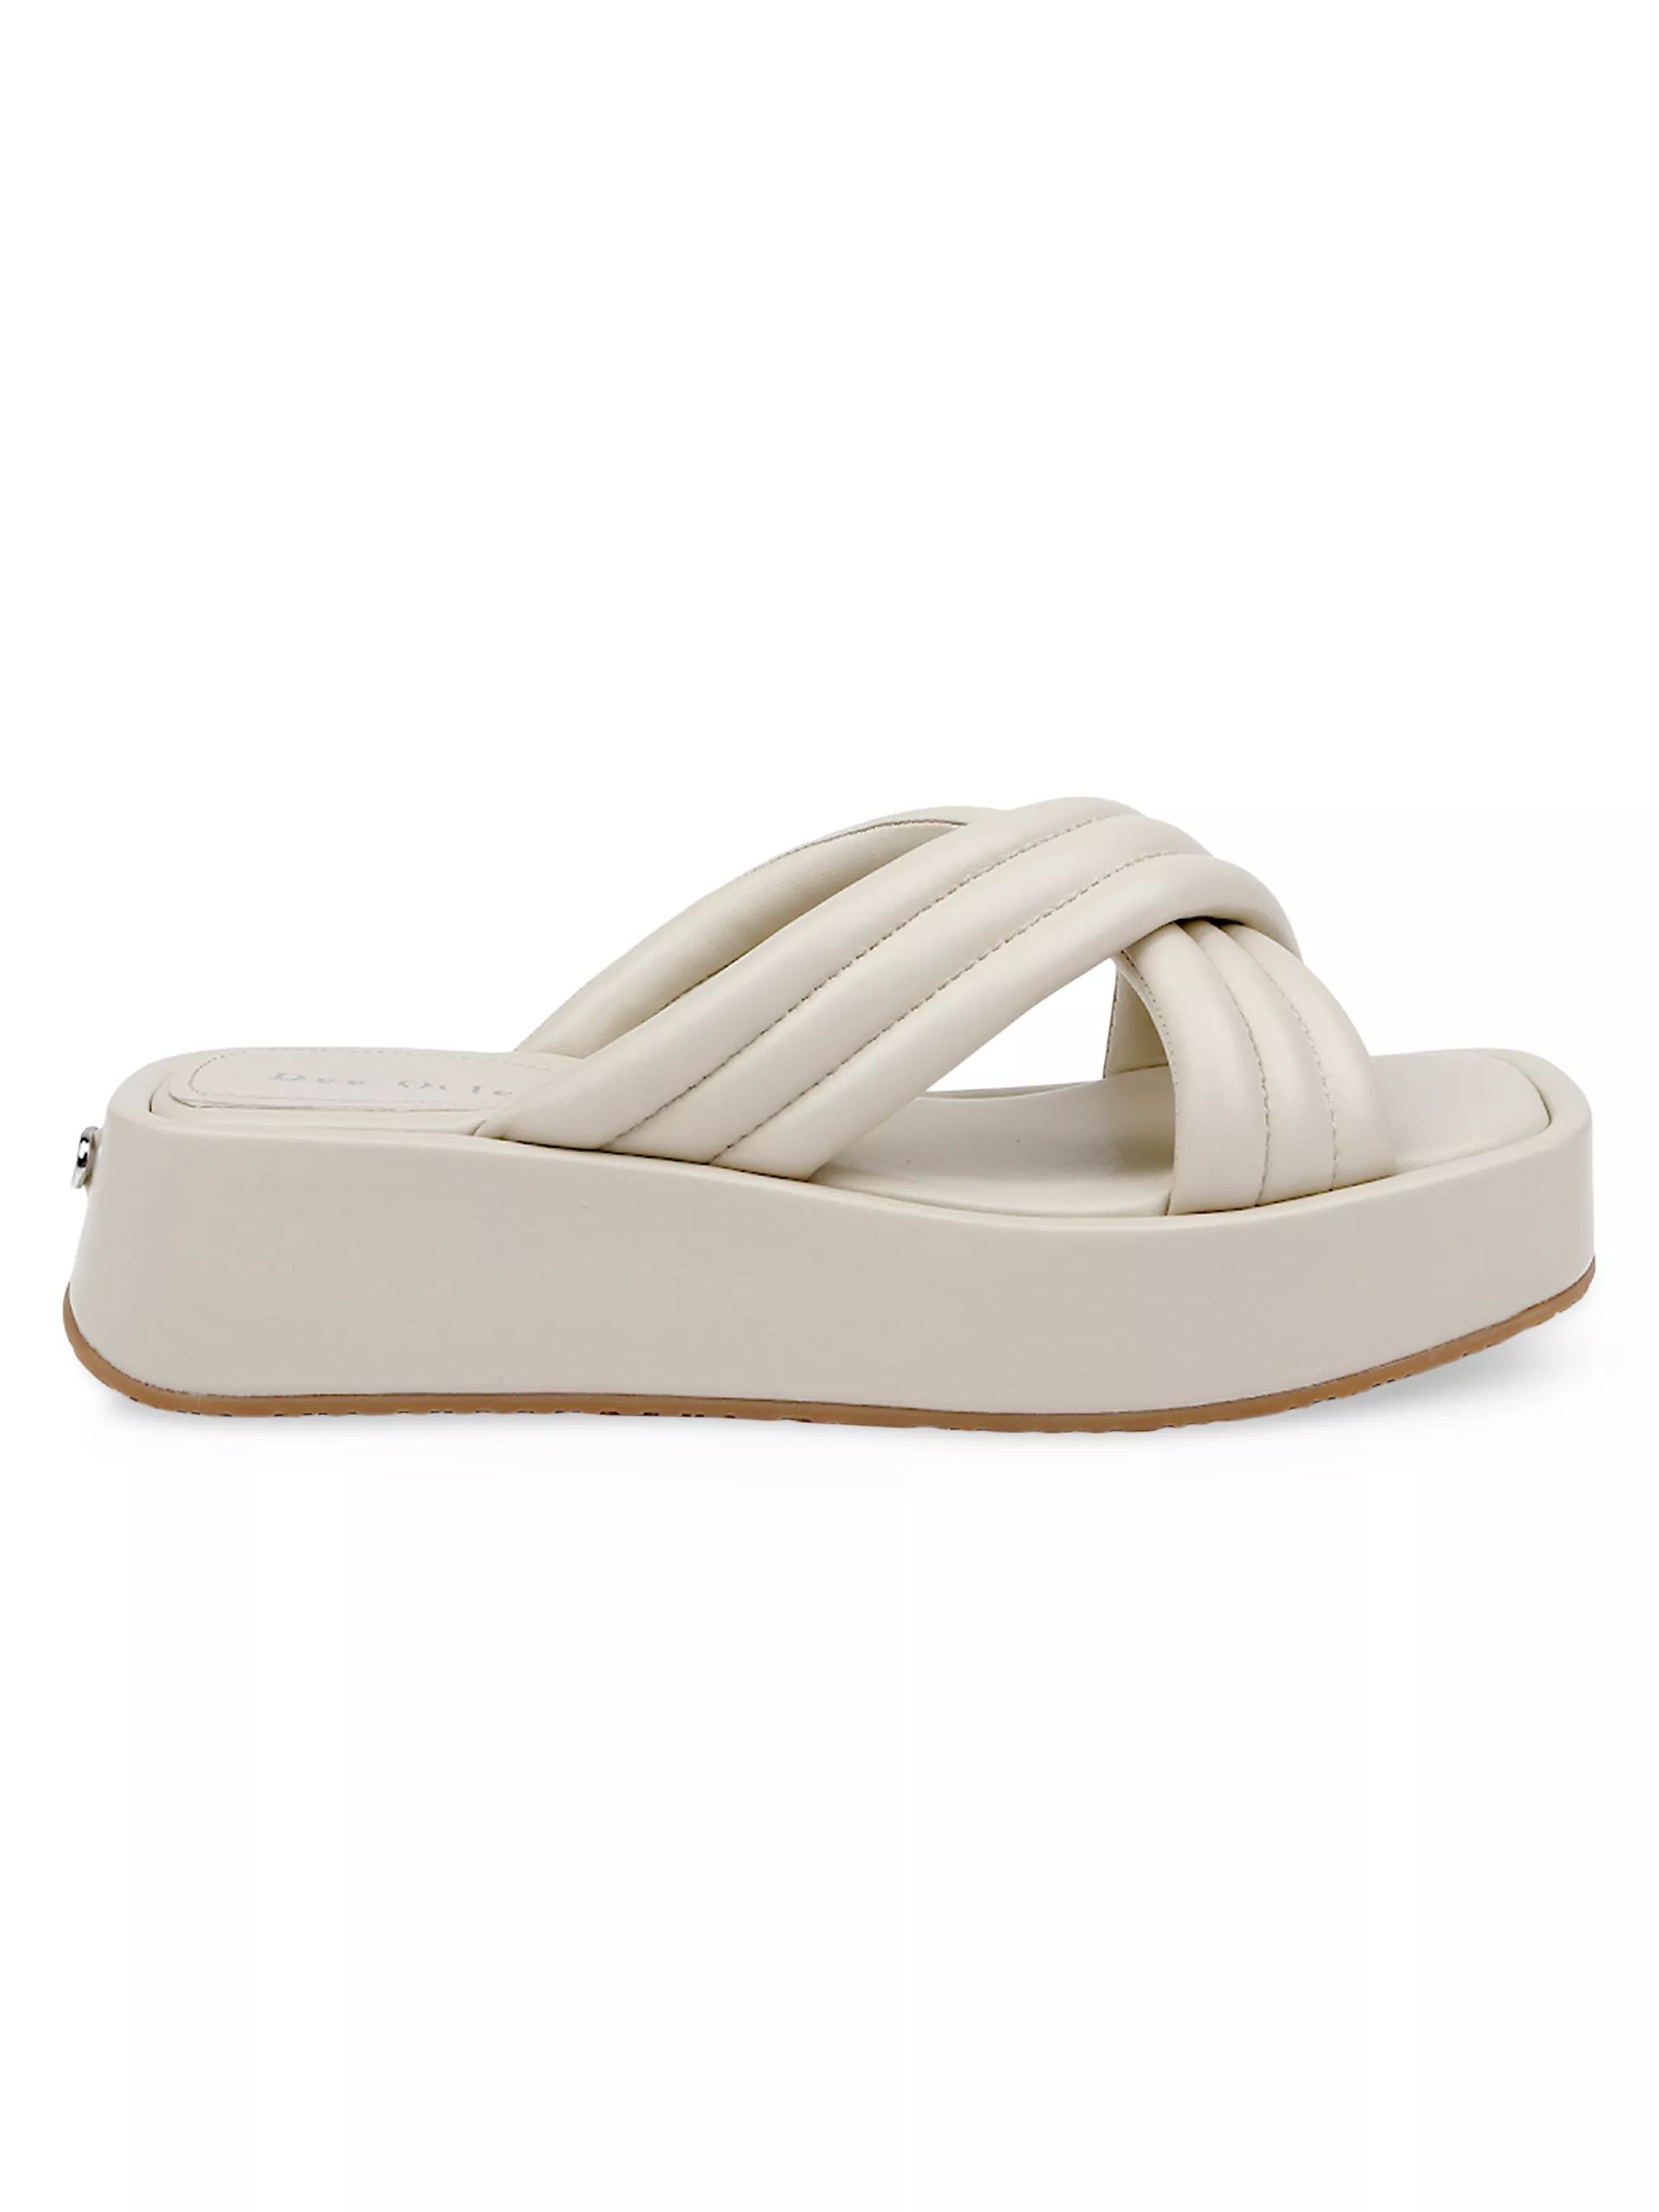 Sicily Flatform Sandals | Saks Fifth Avenue